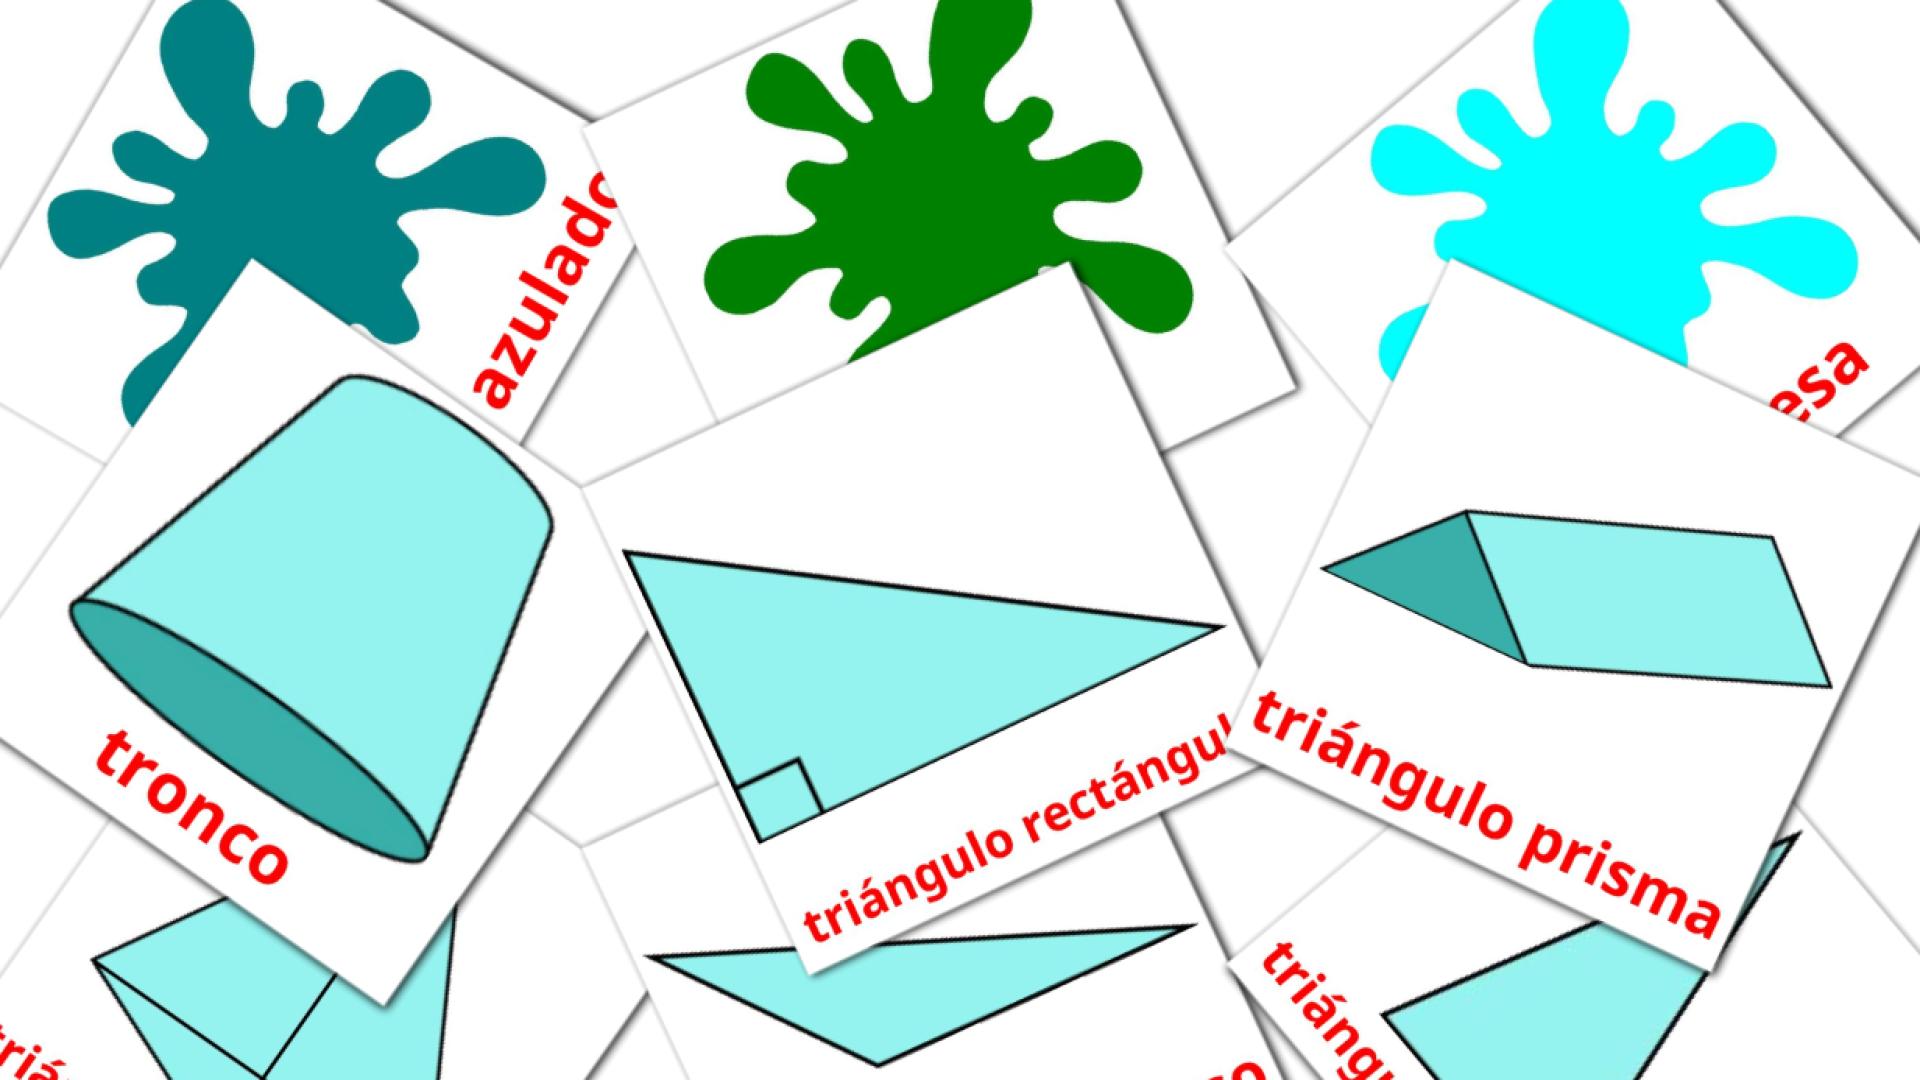 Spanisch Colores y formase Vokabelkarteikarten